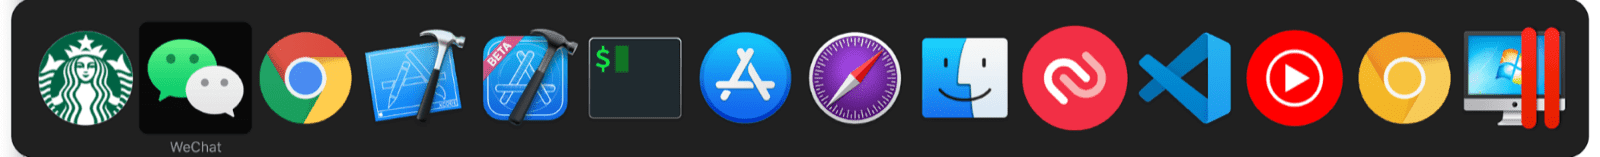 Pengalih multitask macOS menyertakan aplikasi mini bersama aplikasi macOS reguler.